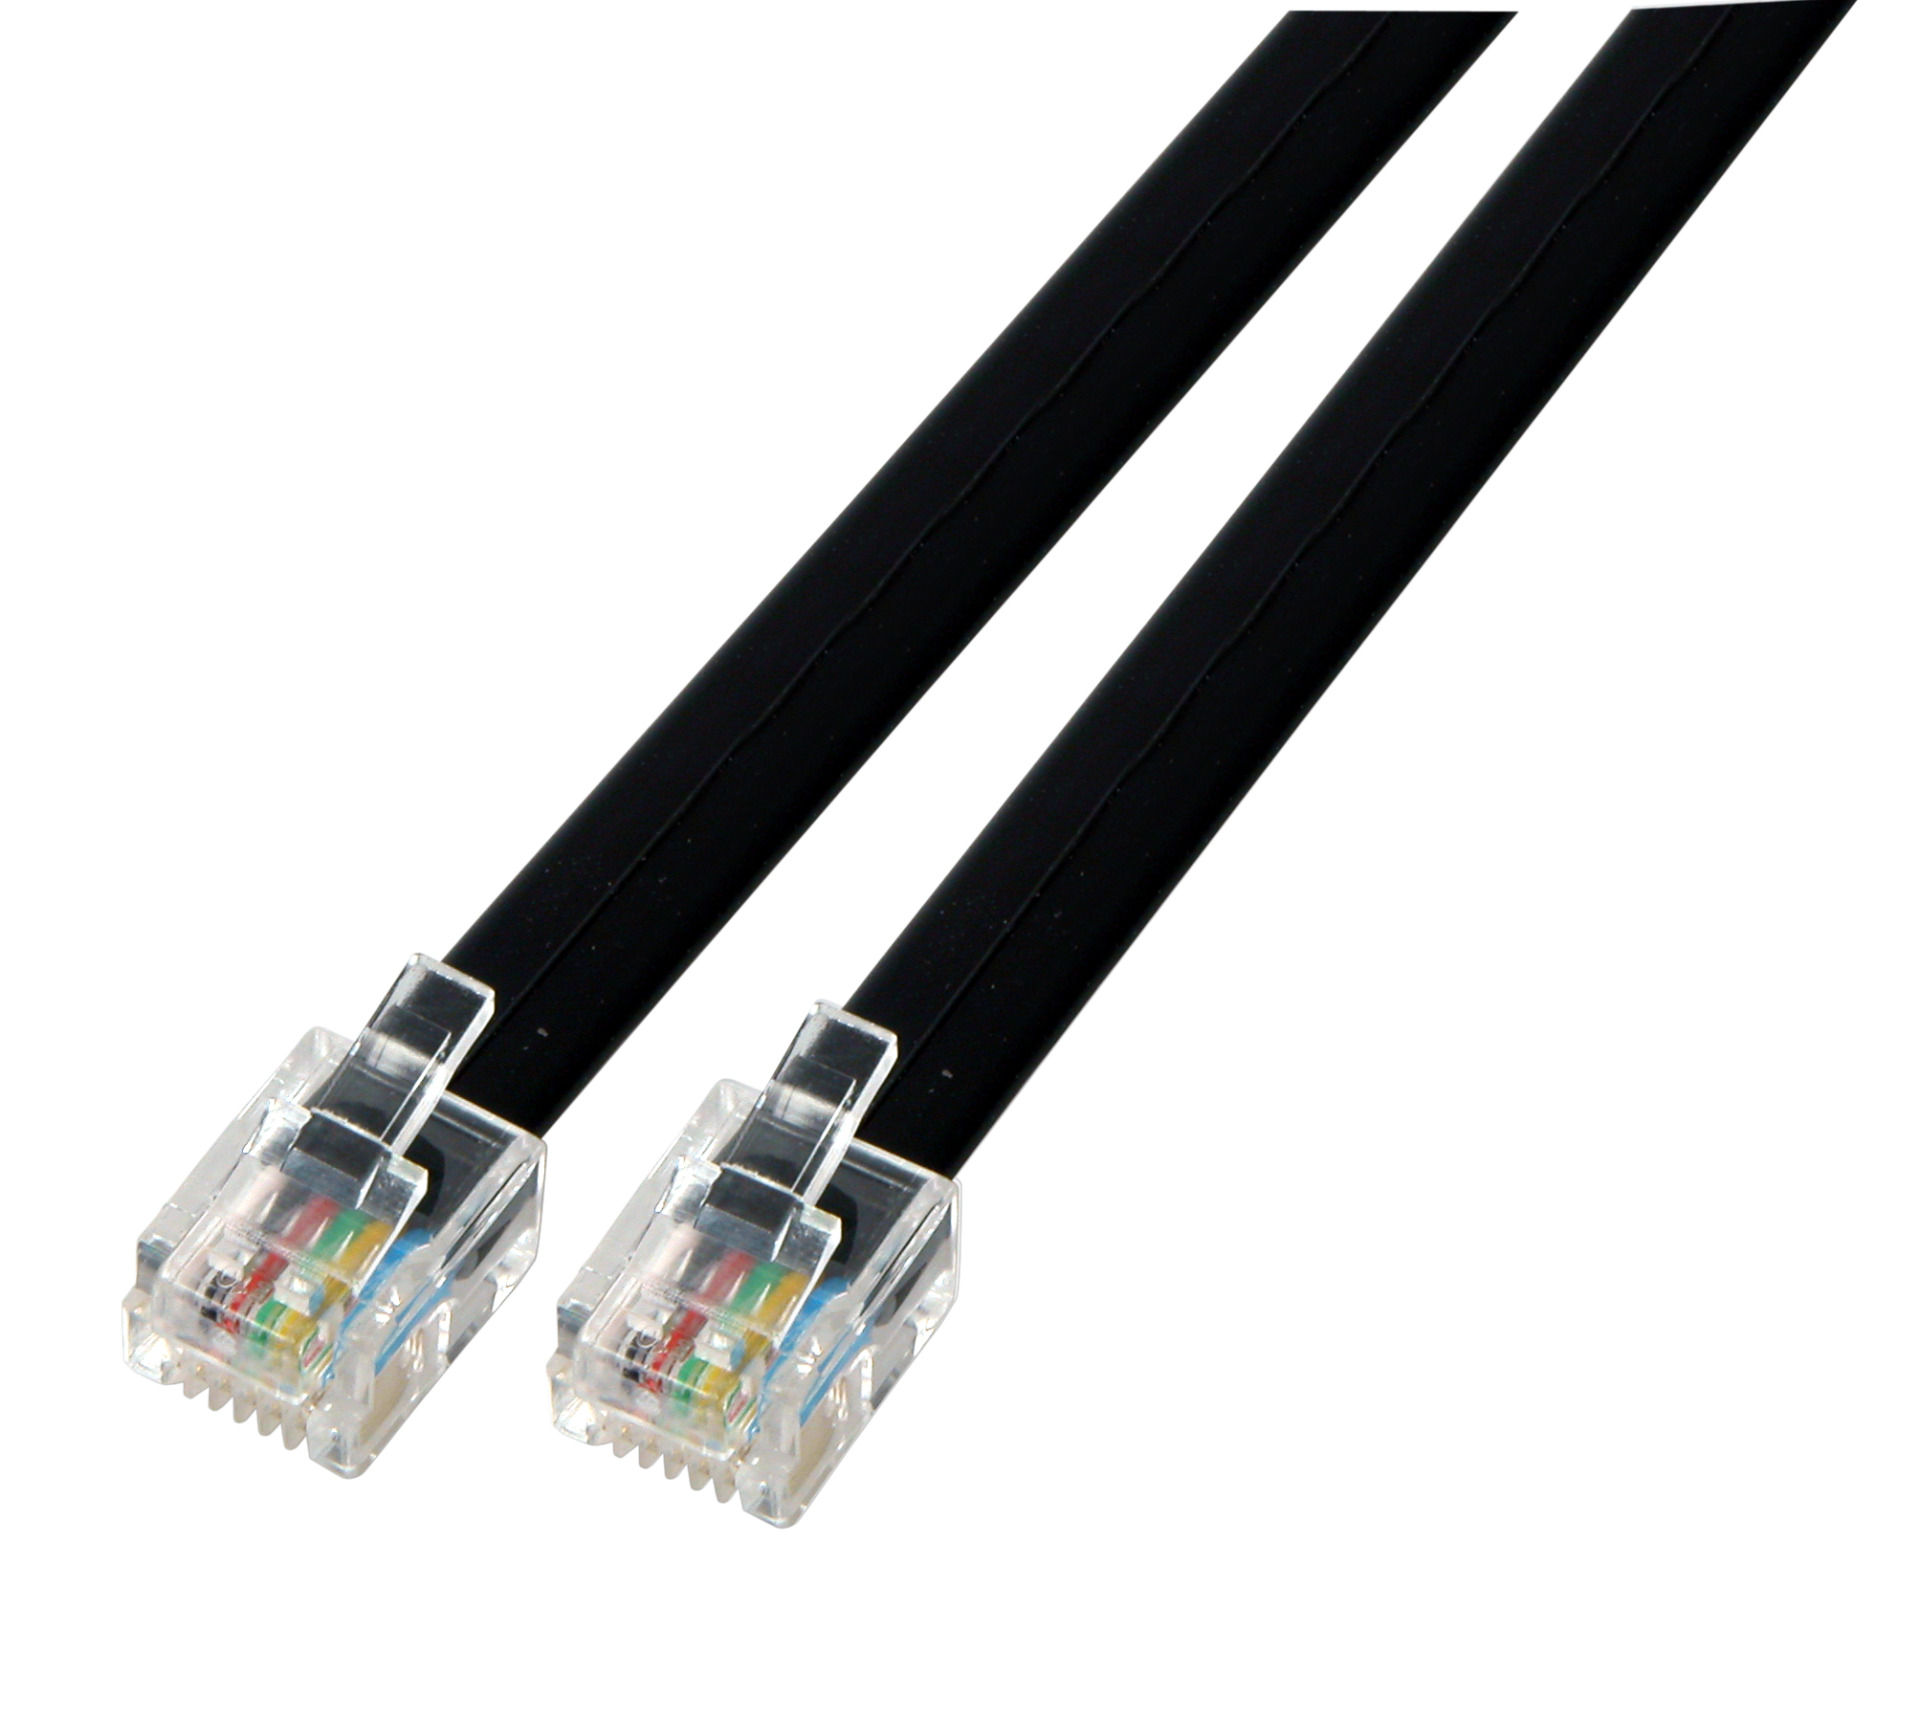 Modular cable black 2 x RJ11 (6/4) Plug, 1:1, 2,0m